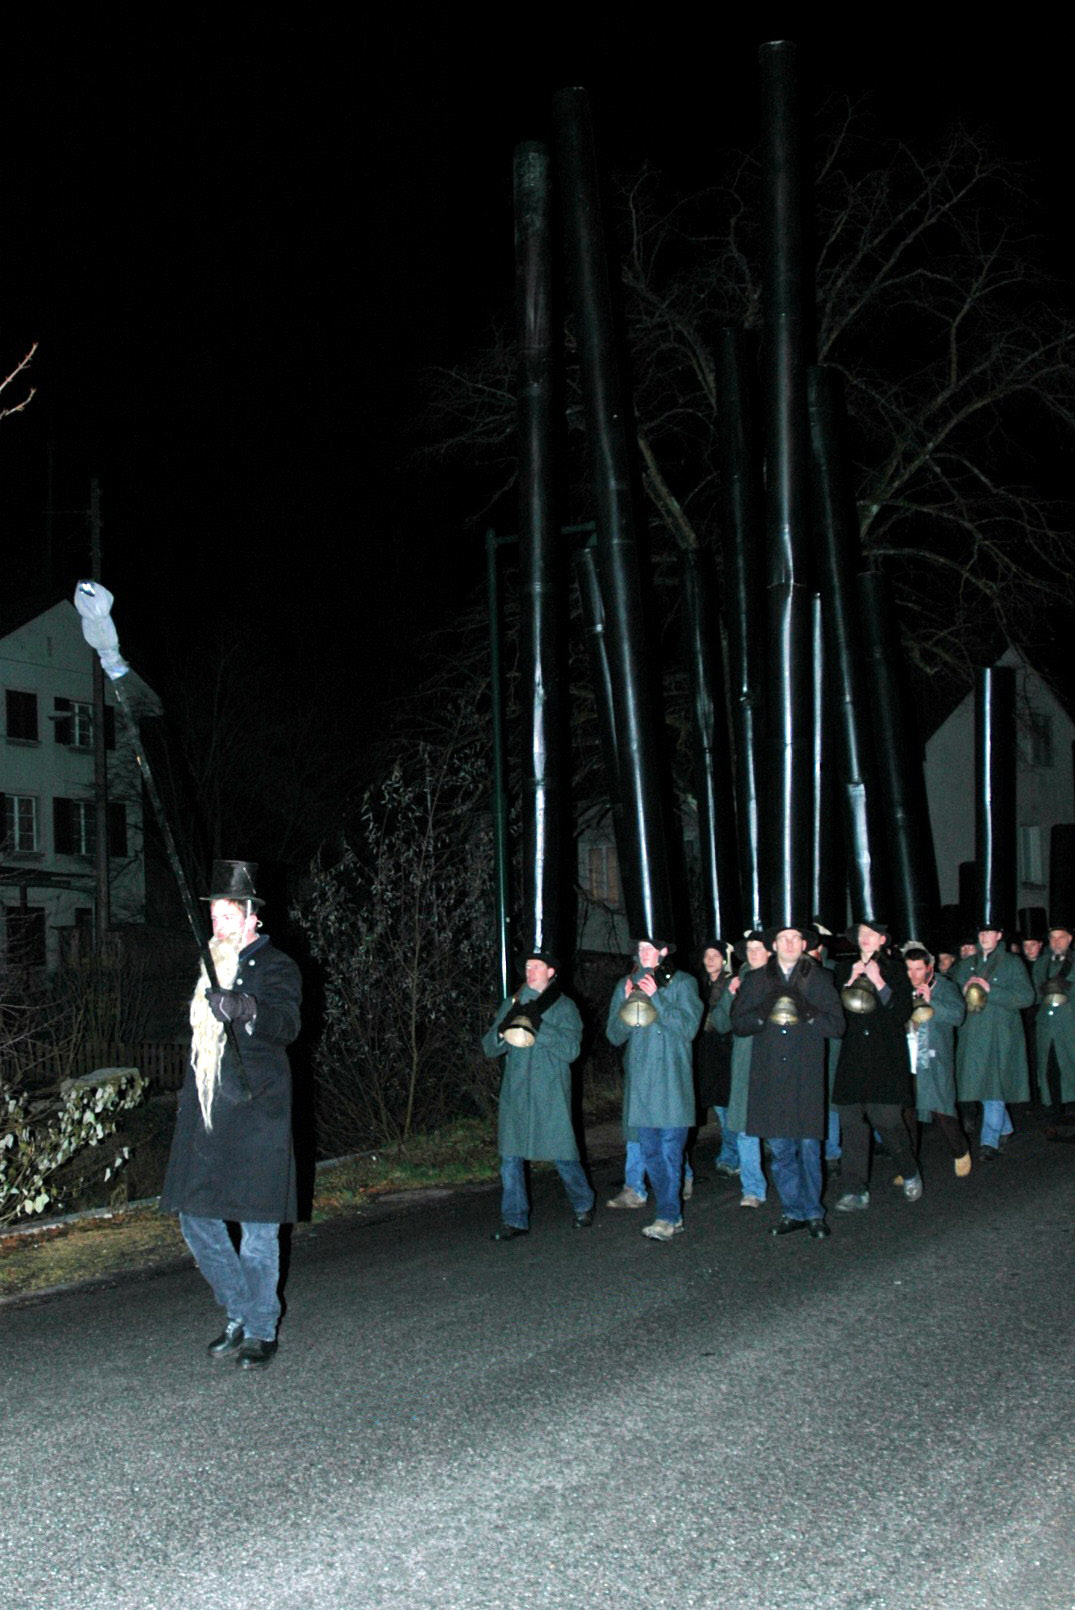 Gli uomini procedono in silenzio, i passi scanditi dalle campane, 2004 © Beat Thommen